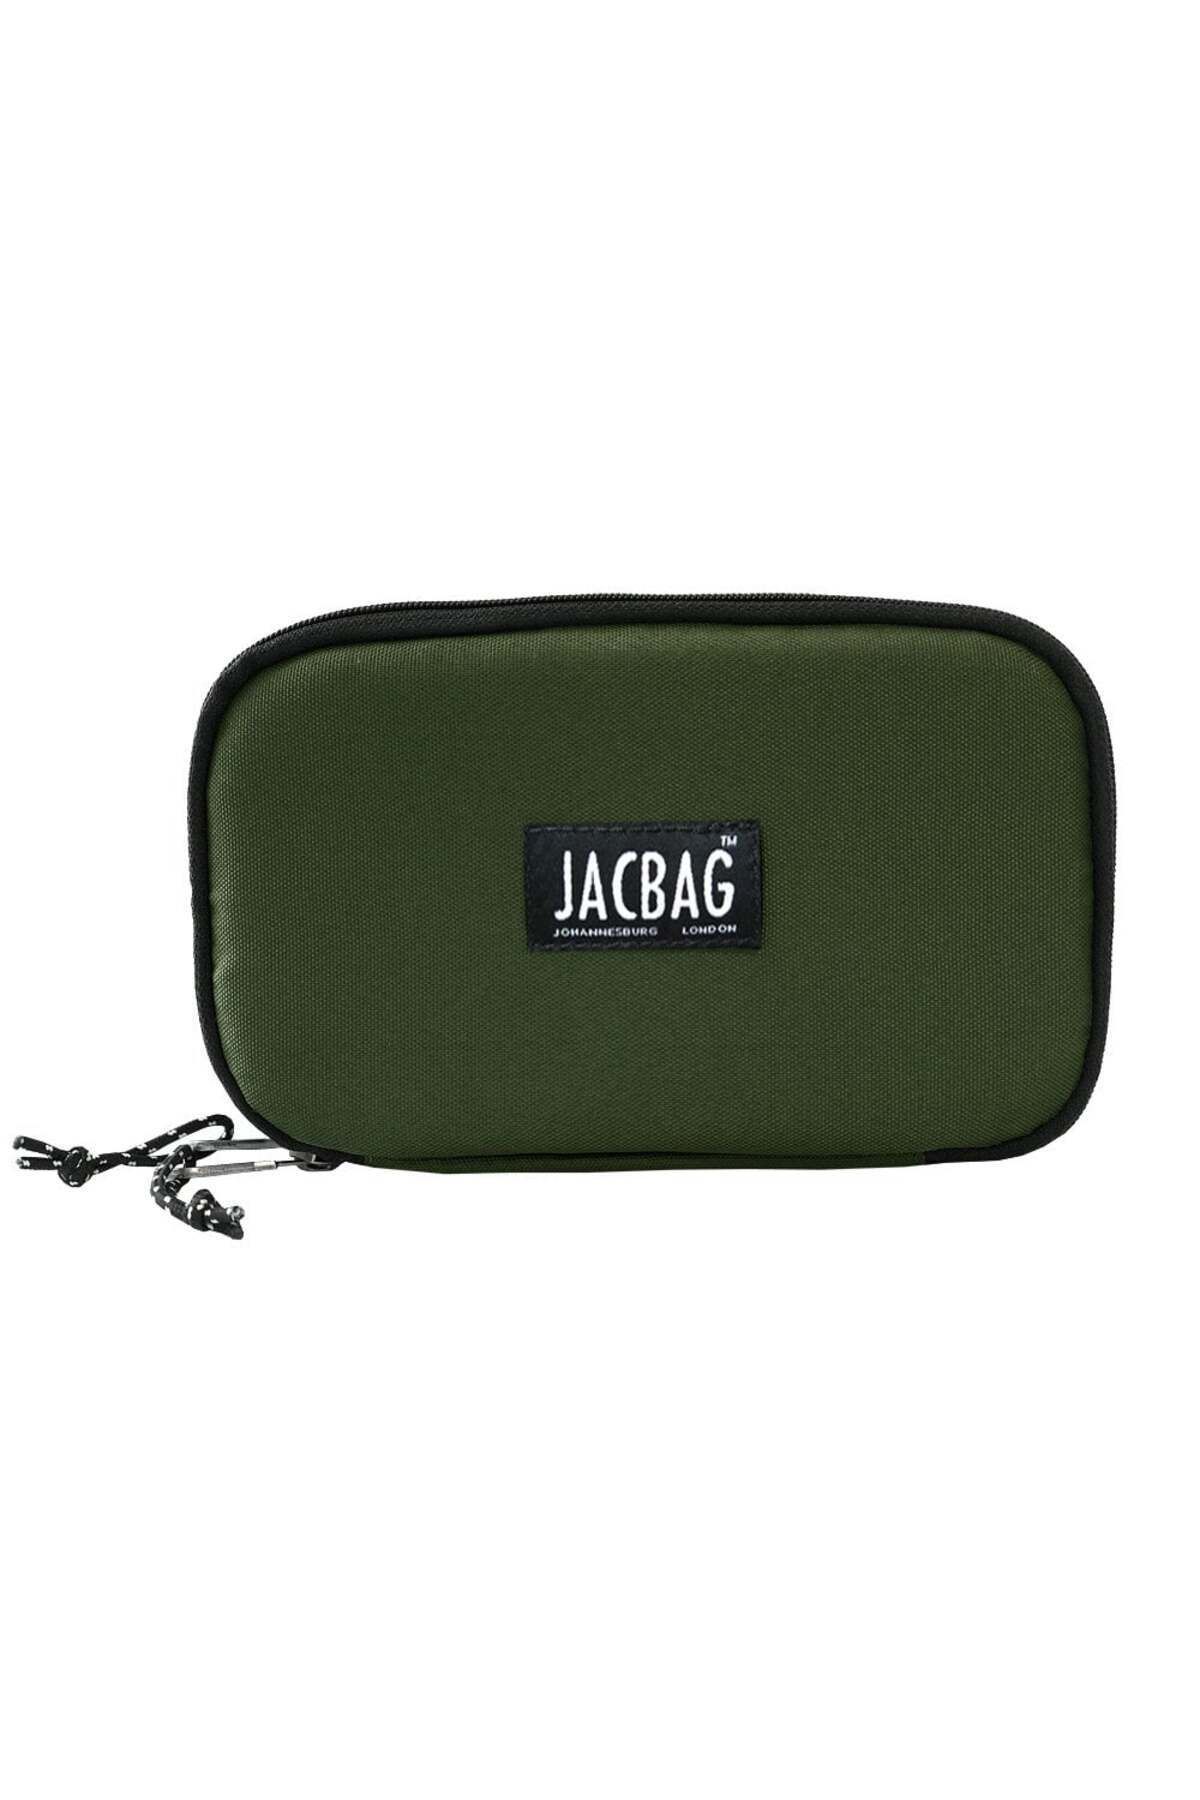 jacbag Double Cover-çift Kapaklı Kalem Kutu